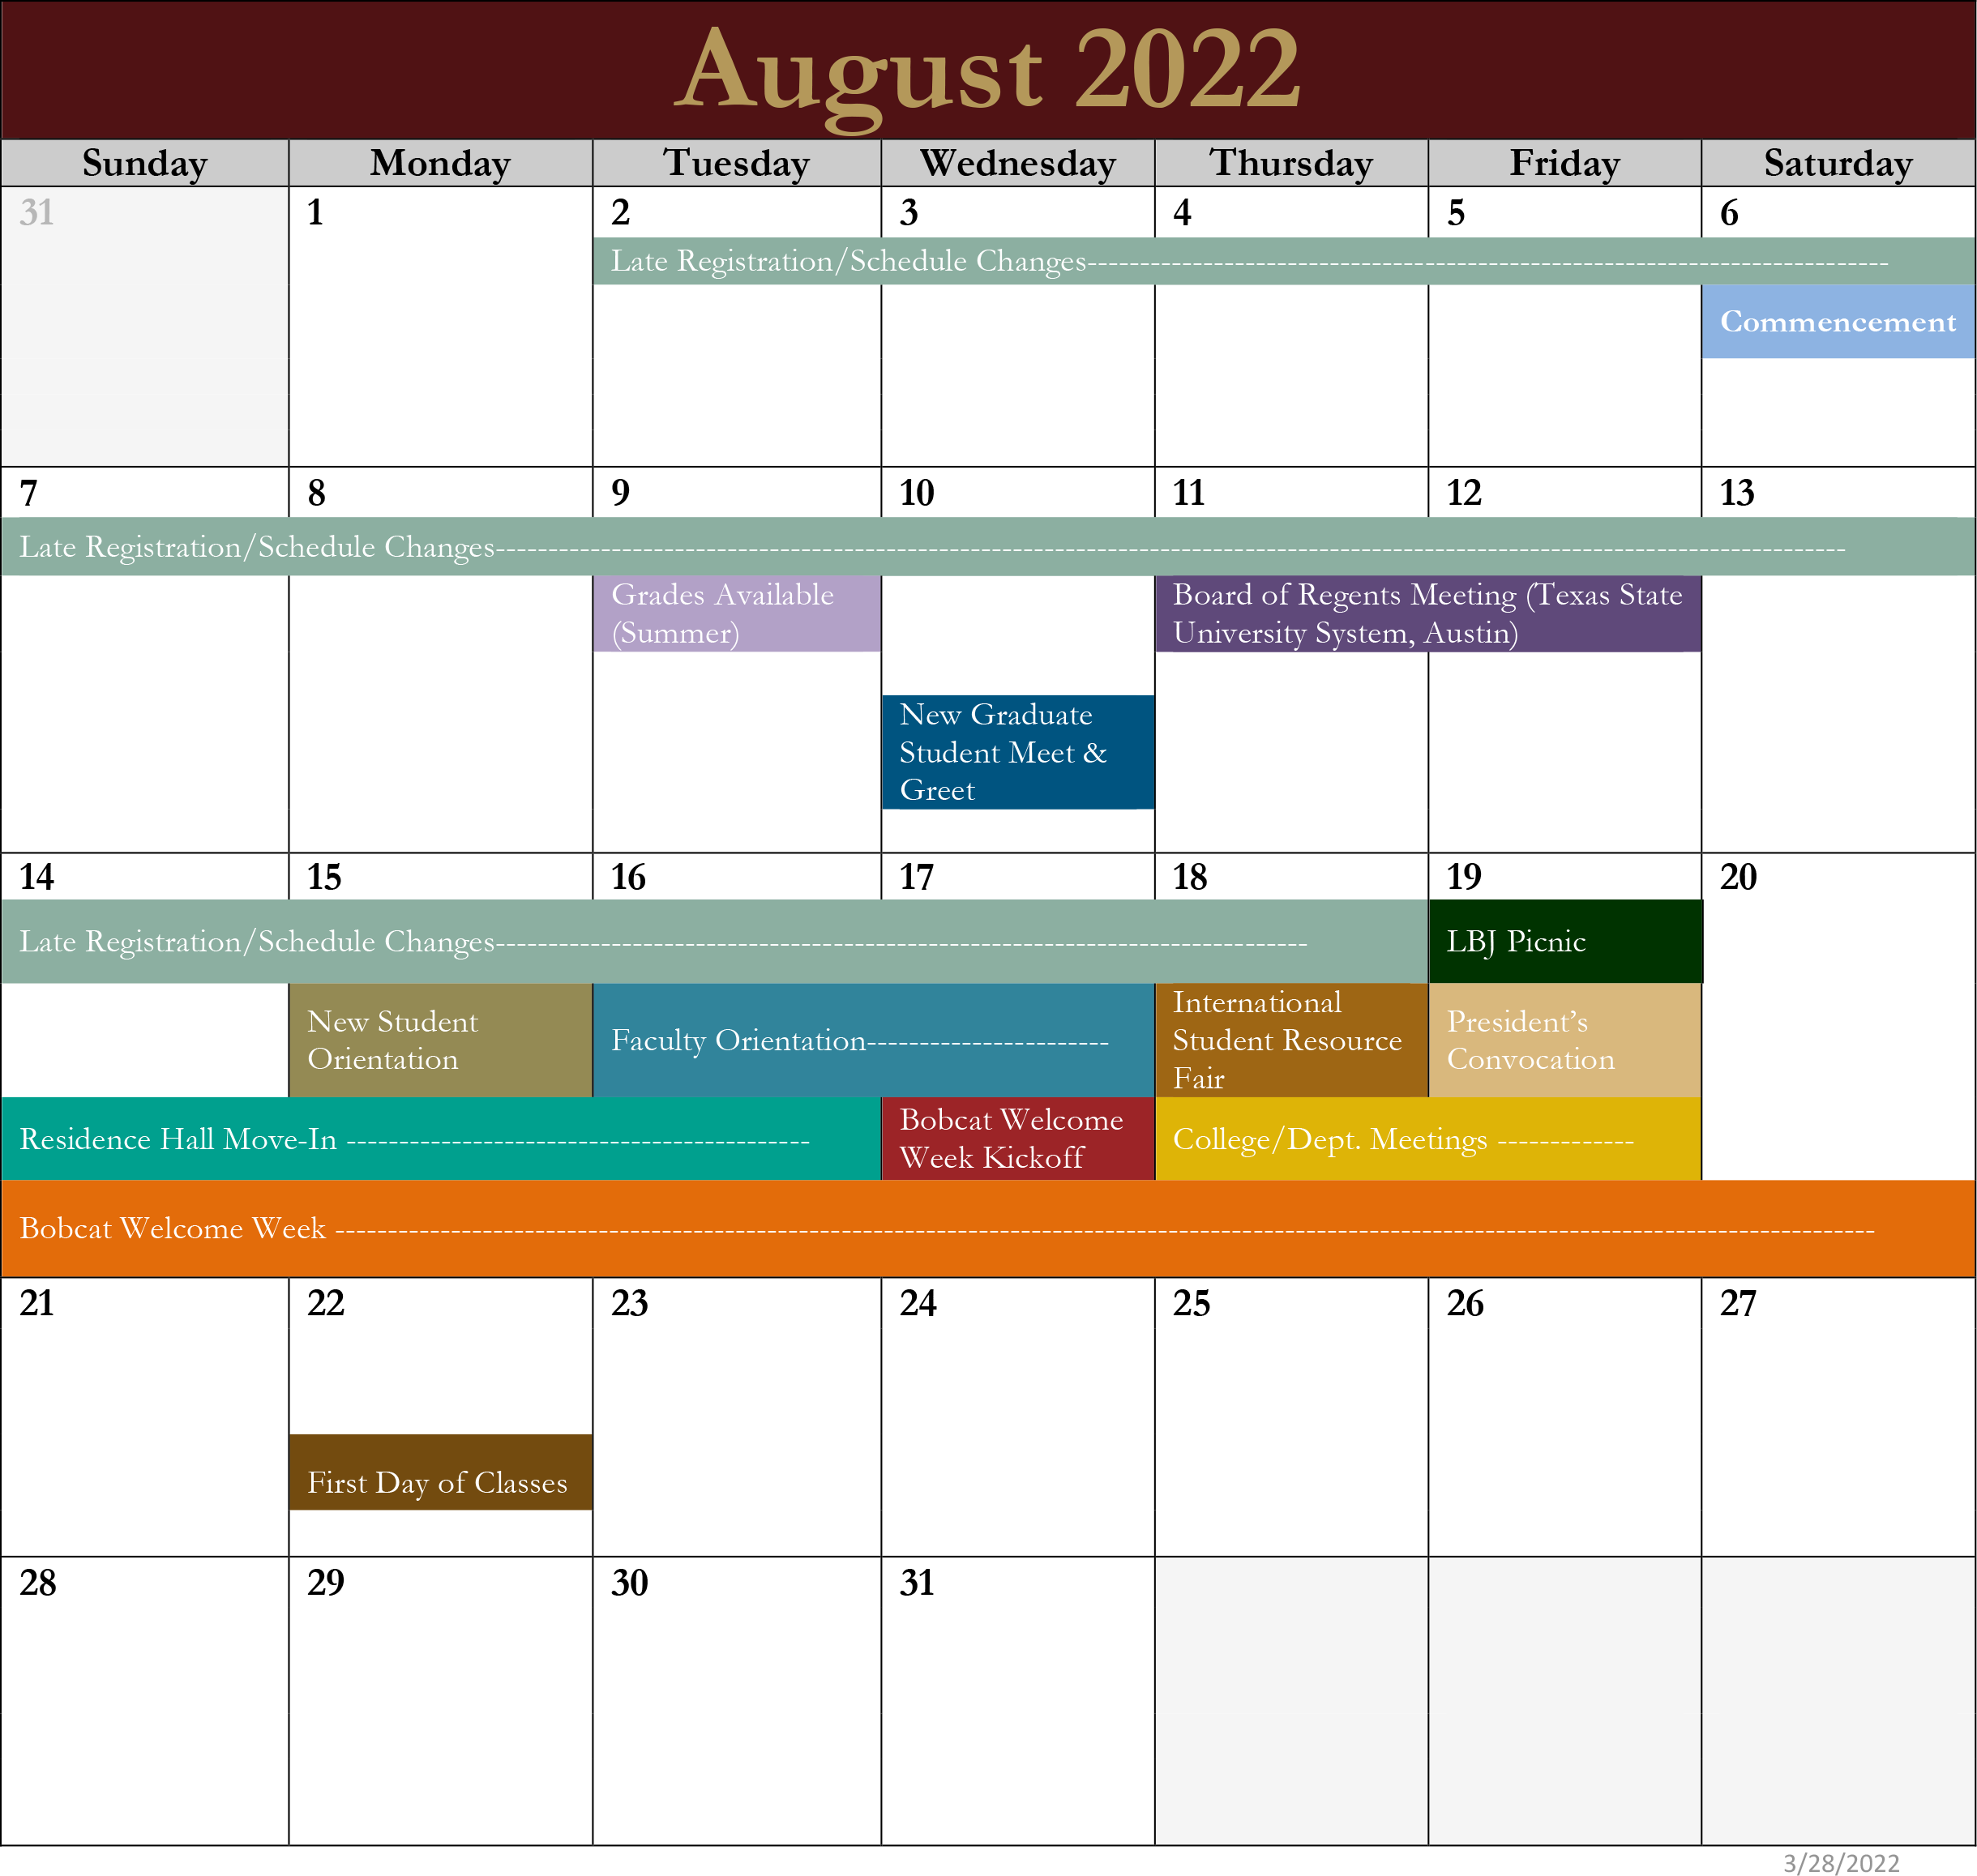 Image of August 2022 Activities Calendar